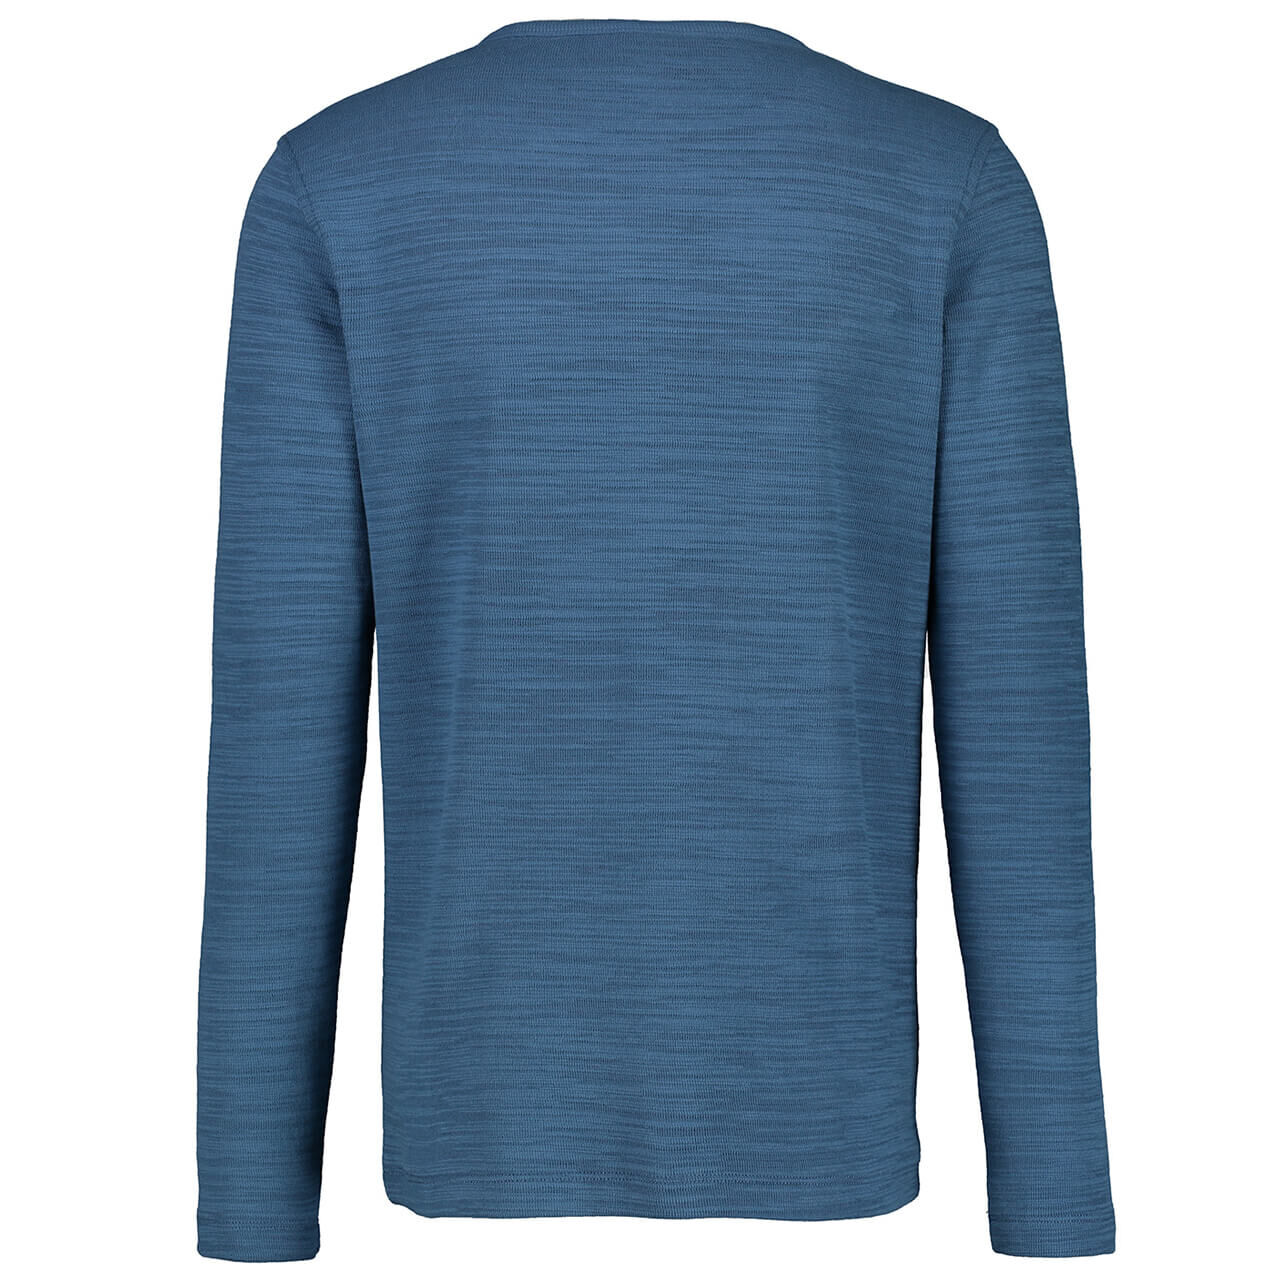 Lerros Serafino Langarm Shirt für Herren in Blau, FarbNr.: 432